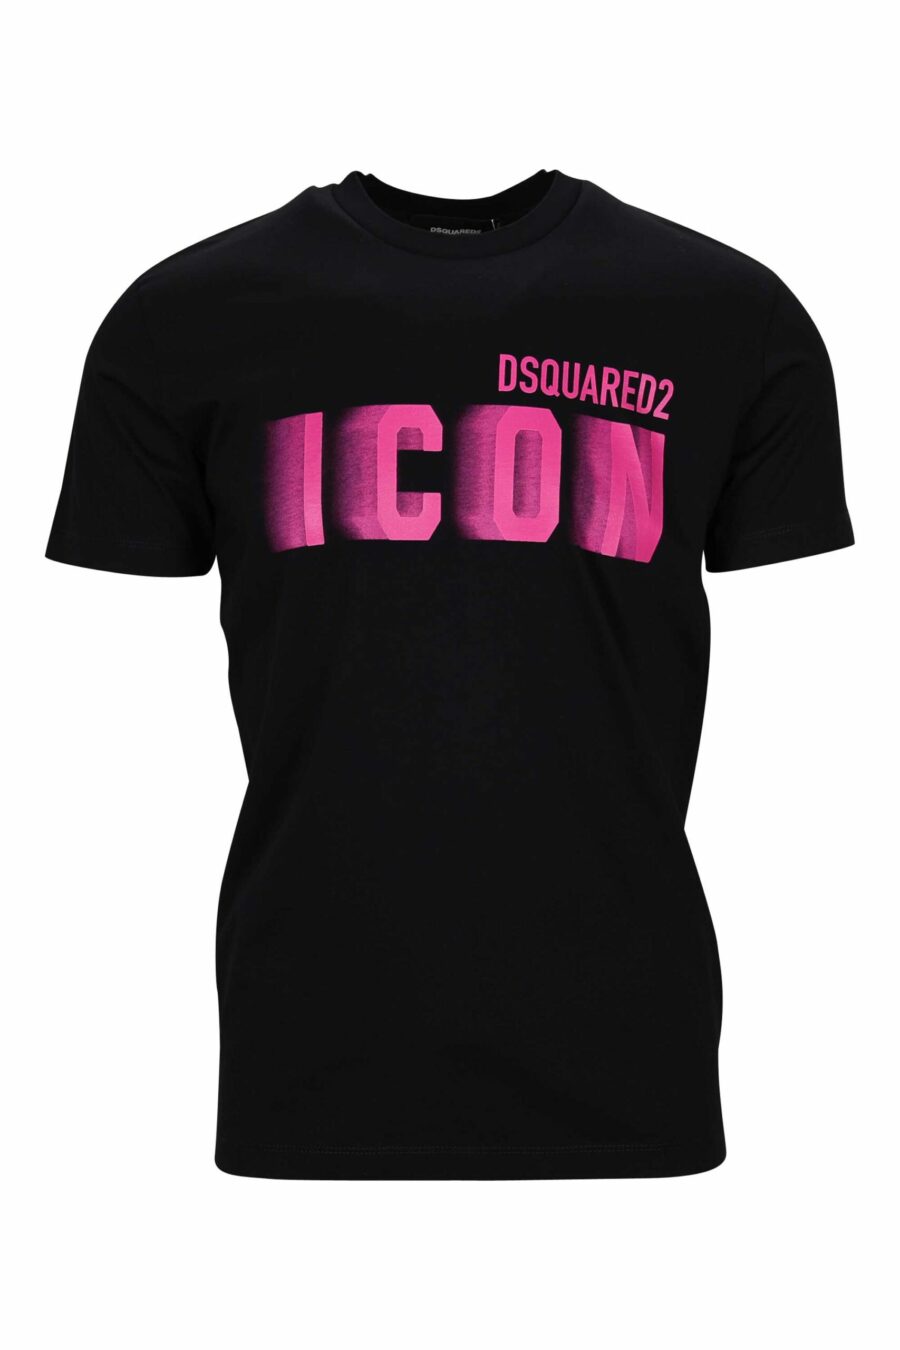 Schwarzes T-Shirt mit neonfuchsiafarbenem, verschwommenem "Icon"-Maxilogo - 8054148359058 skaliert